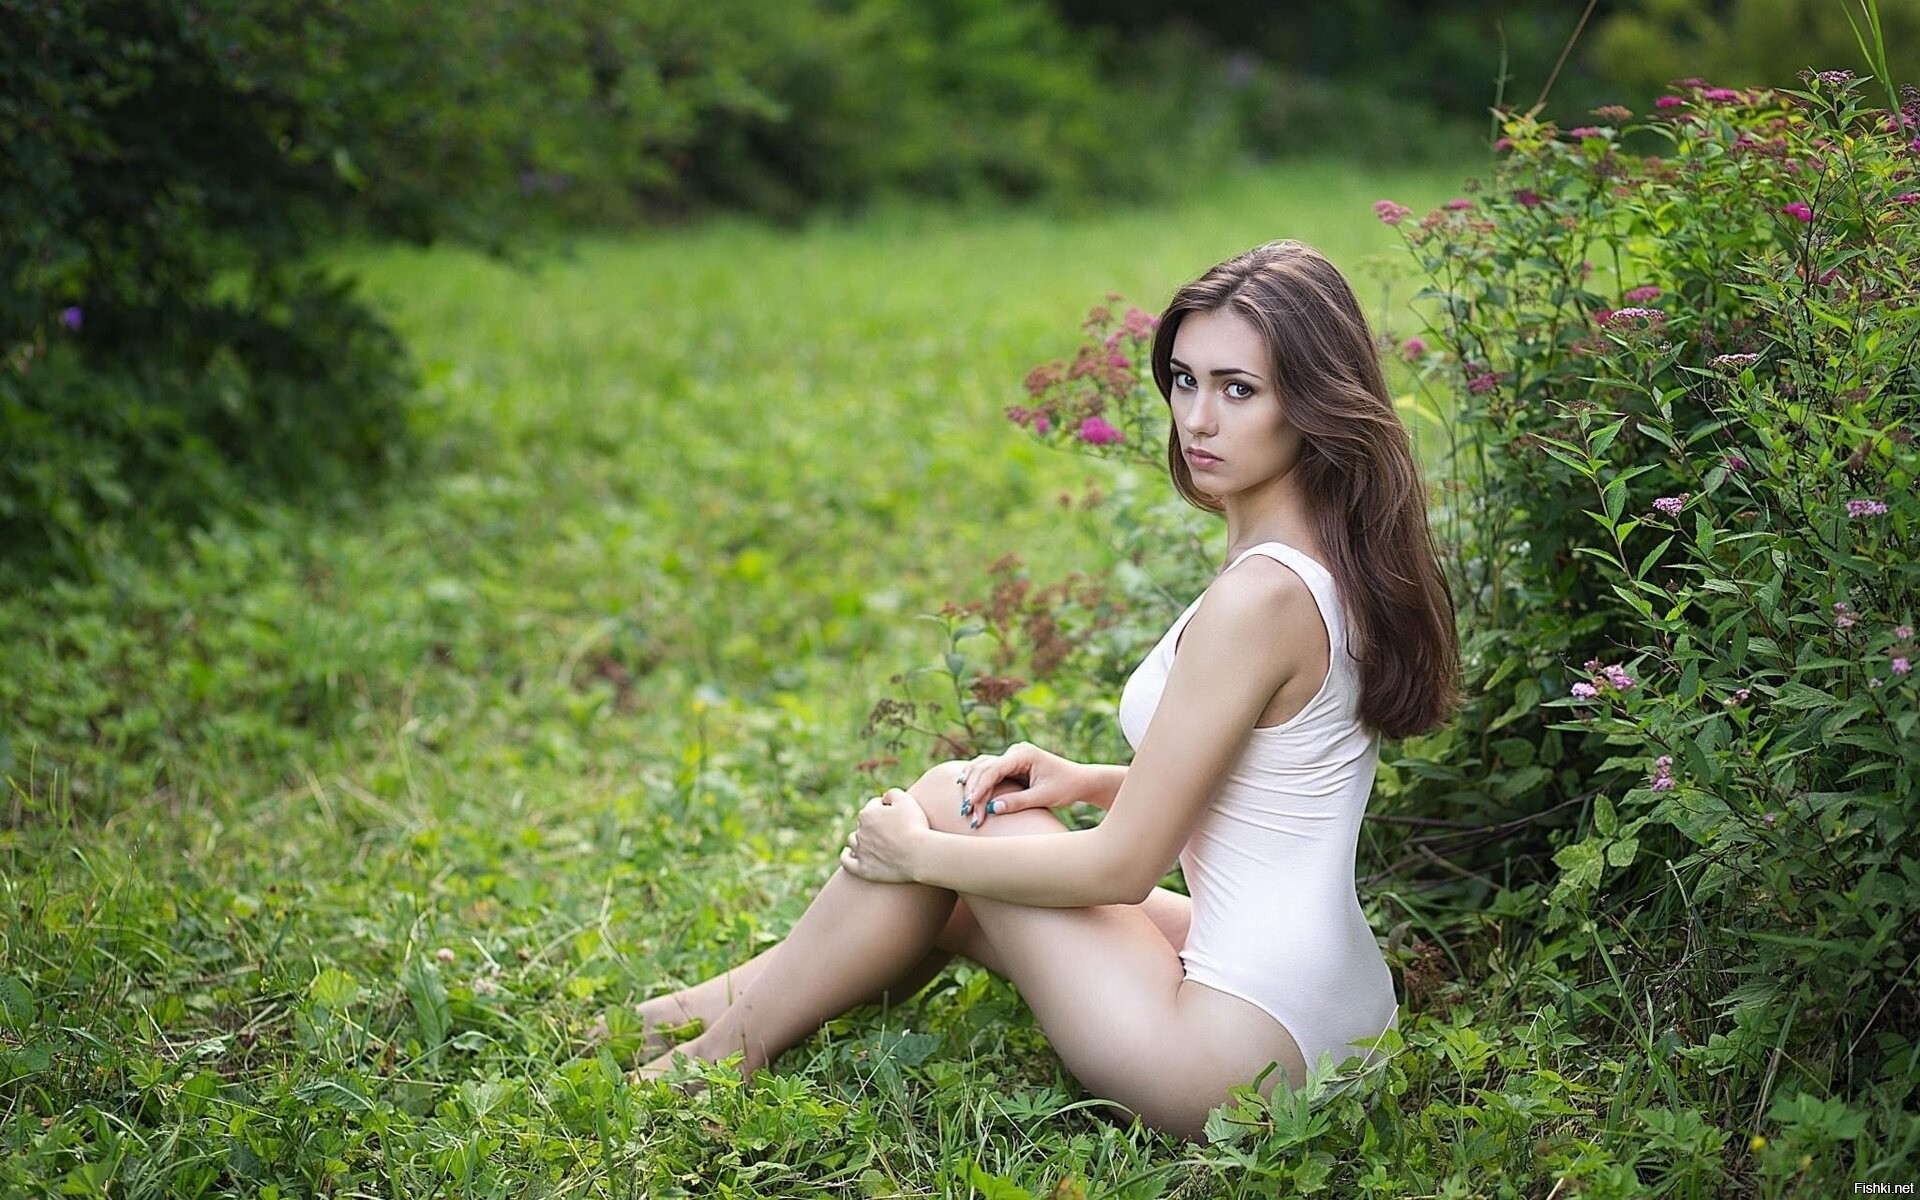 Деревенская красавица раскрывает свои интимные секреты на полянке